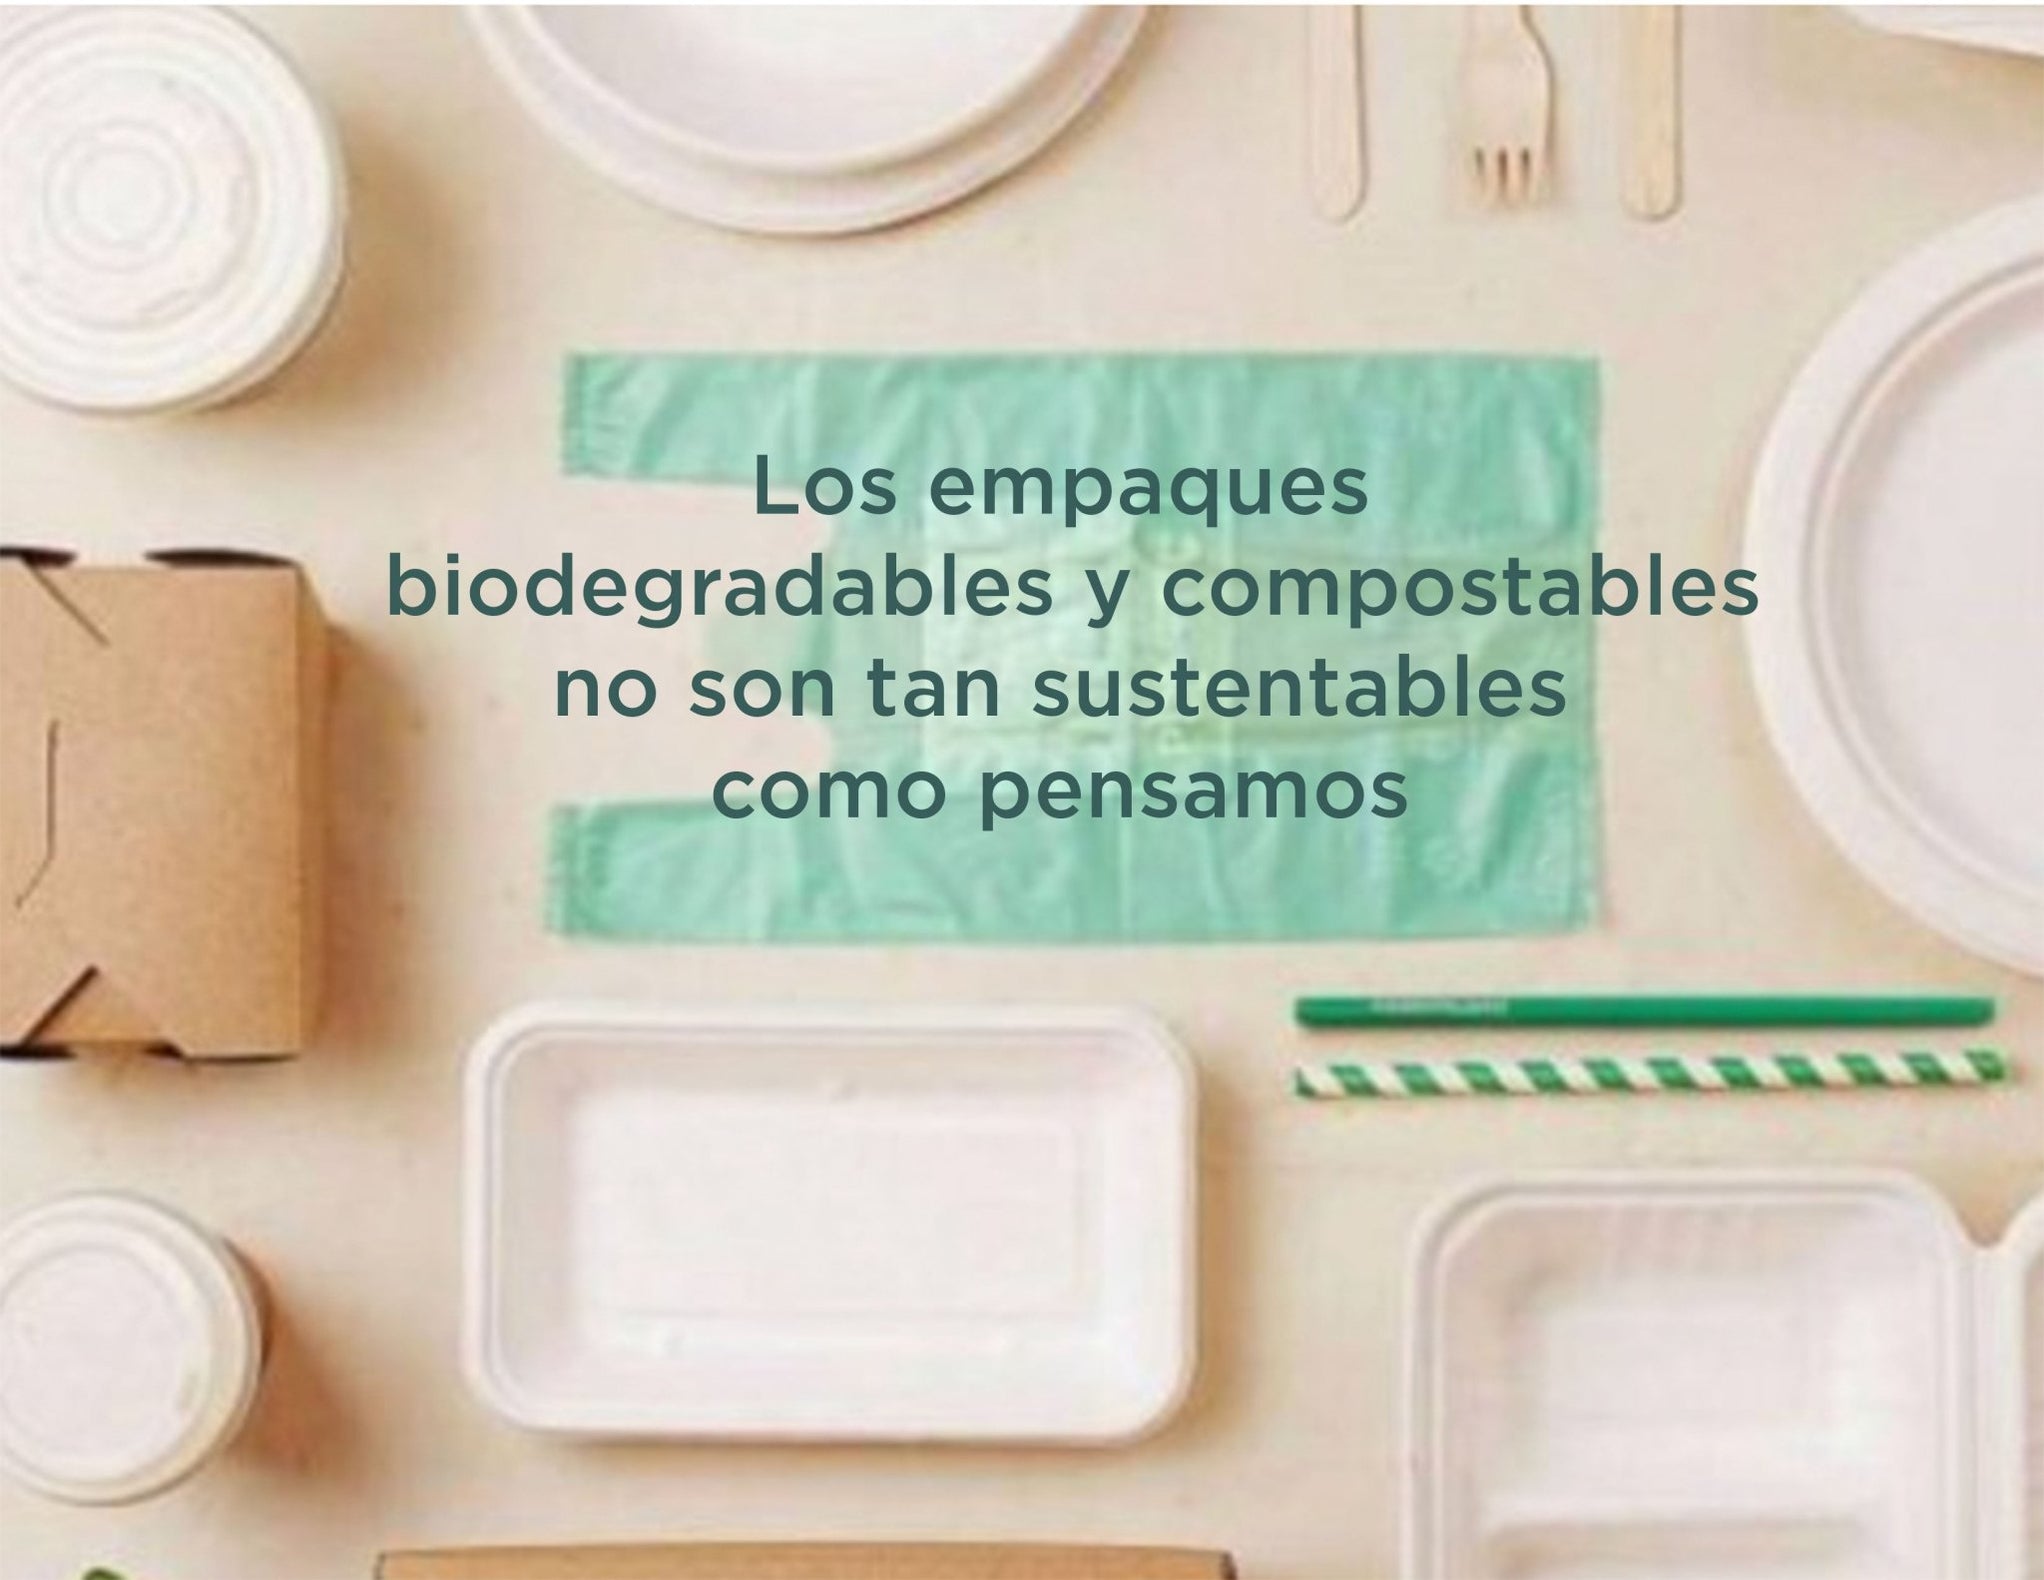 Los empaques biodegradables y/o compostables NO son realmente sustentables